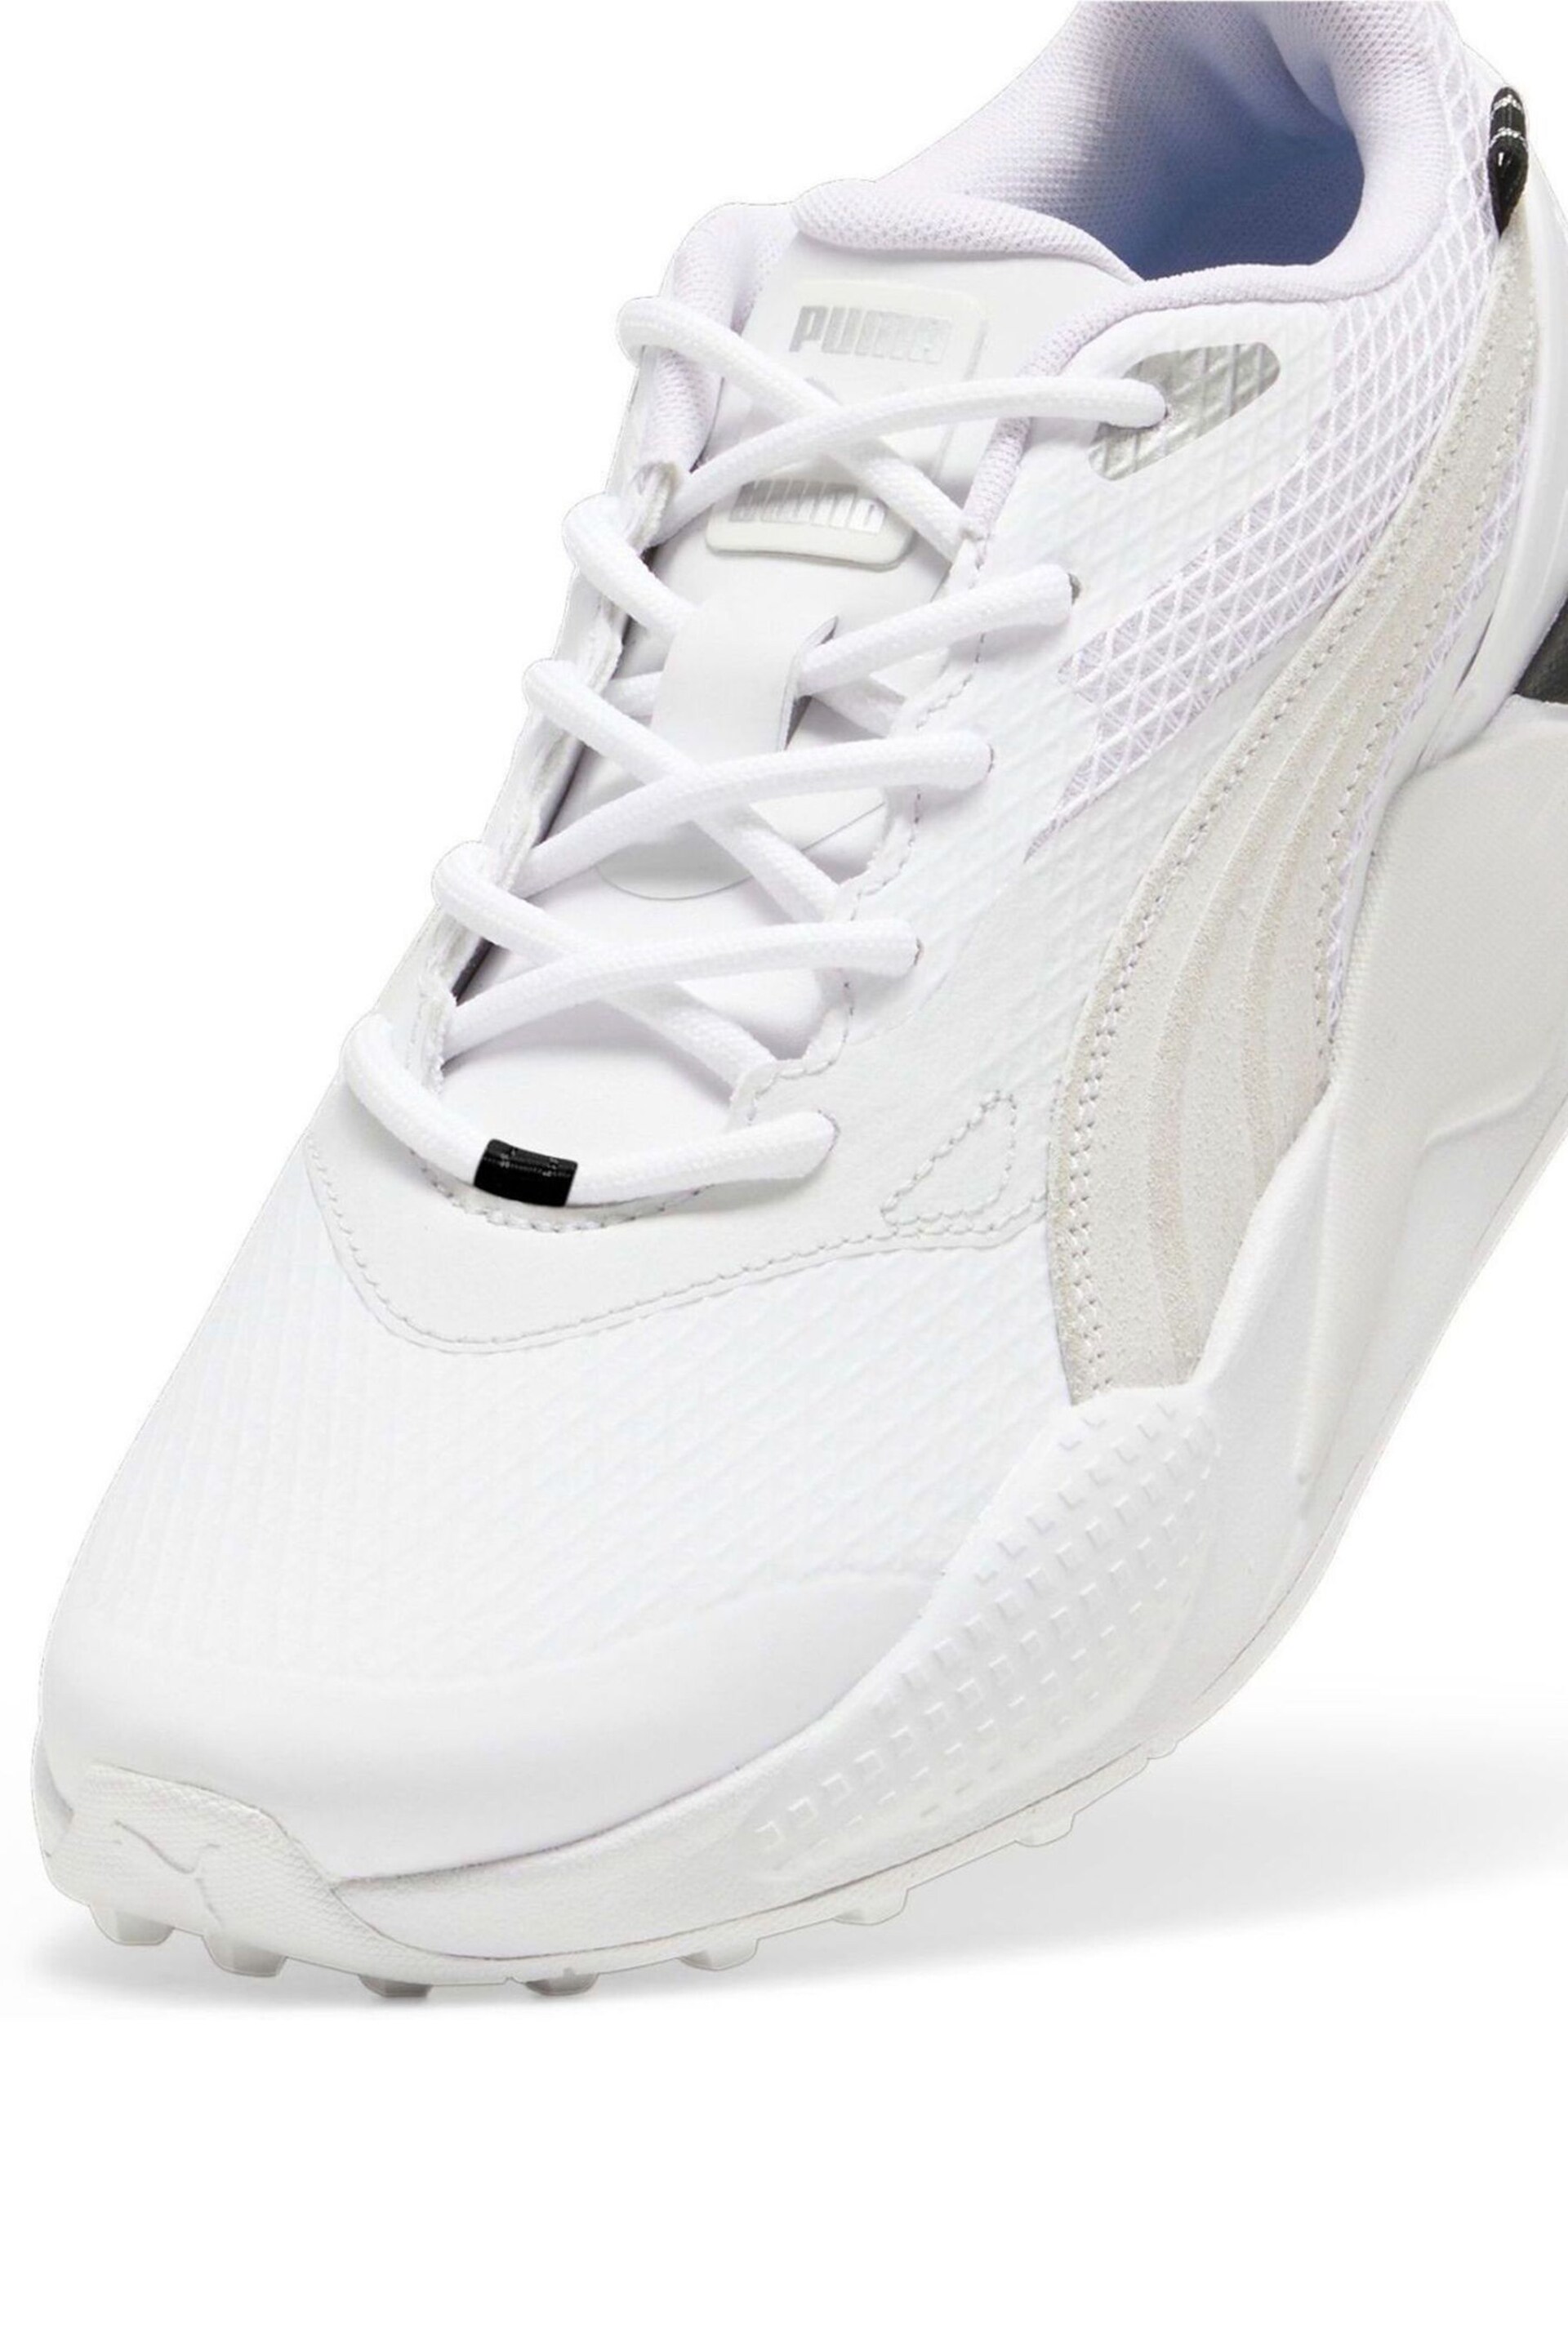 Puma White Mens GS-X Efekt Golf Shoes - Image 3 of 4